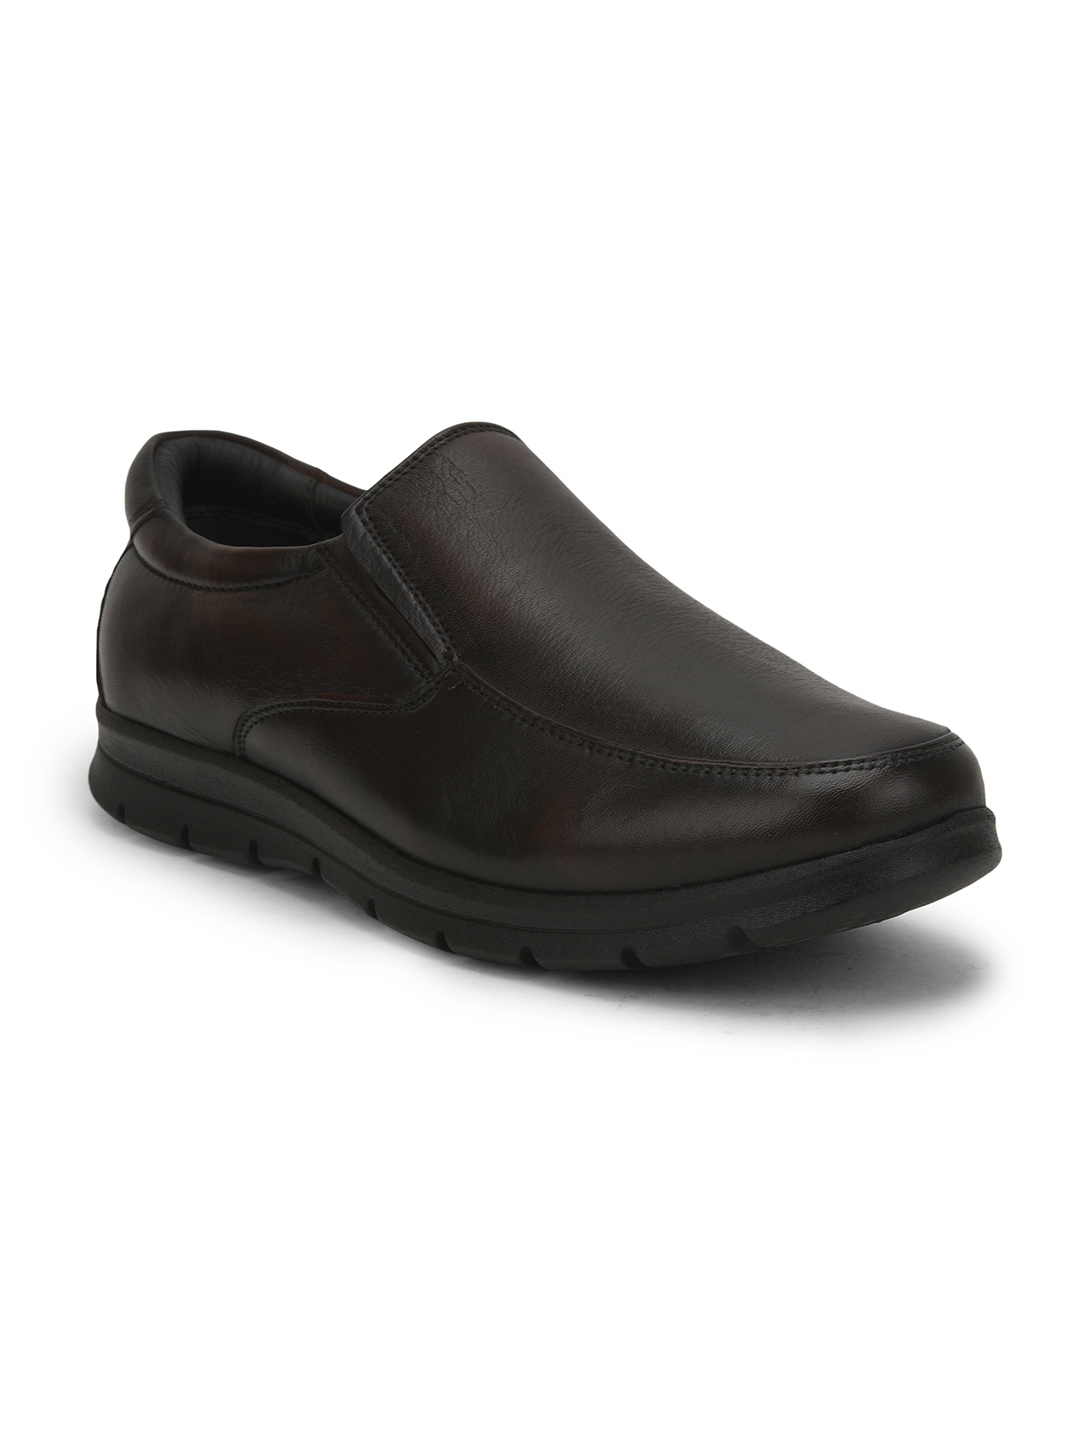 Liberty Healers Jpl-232 Mens Brown Formal Shoes